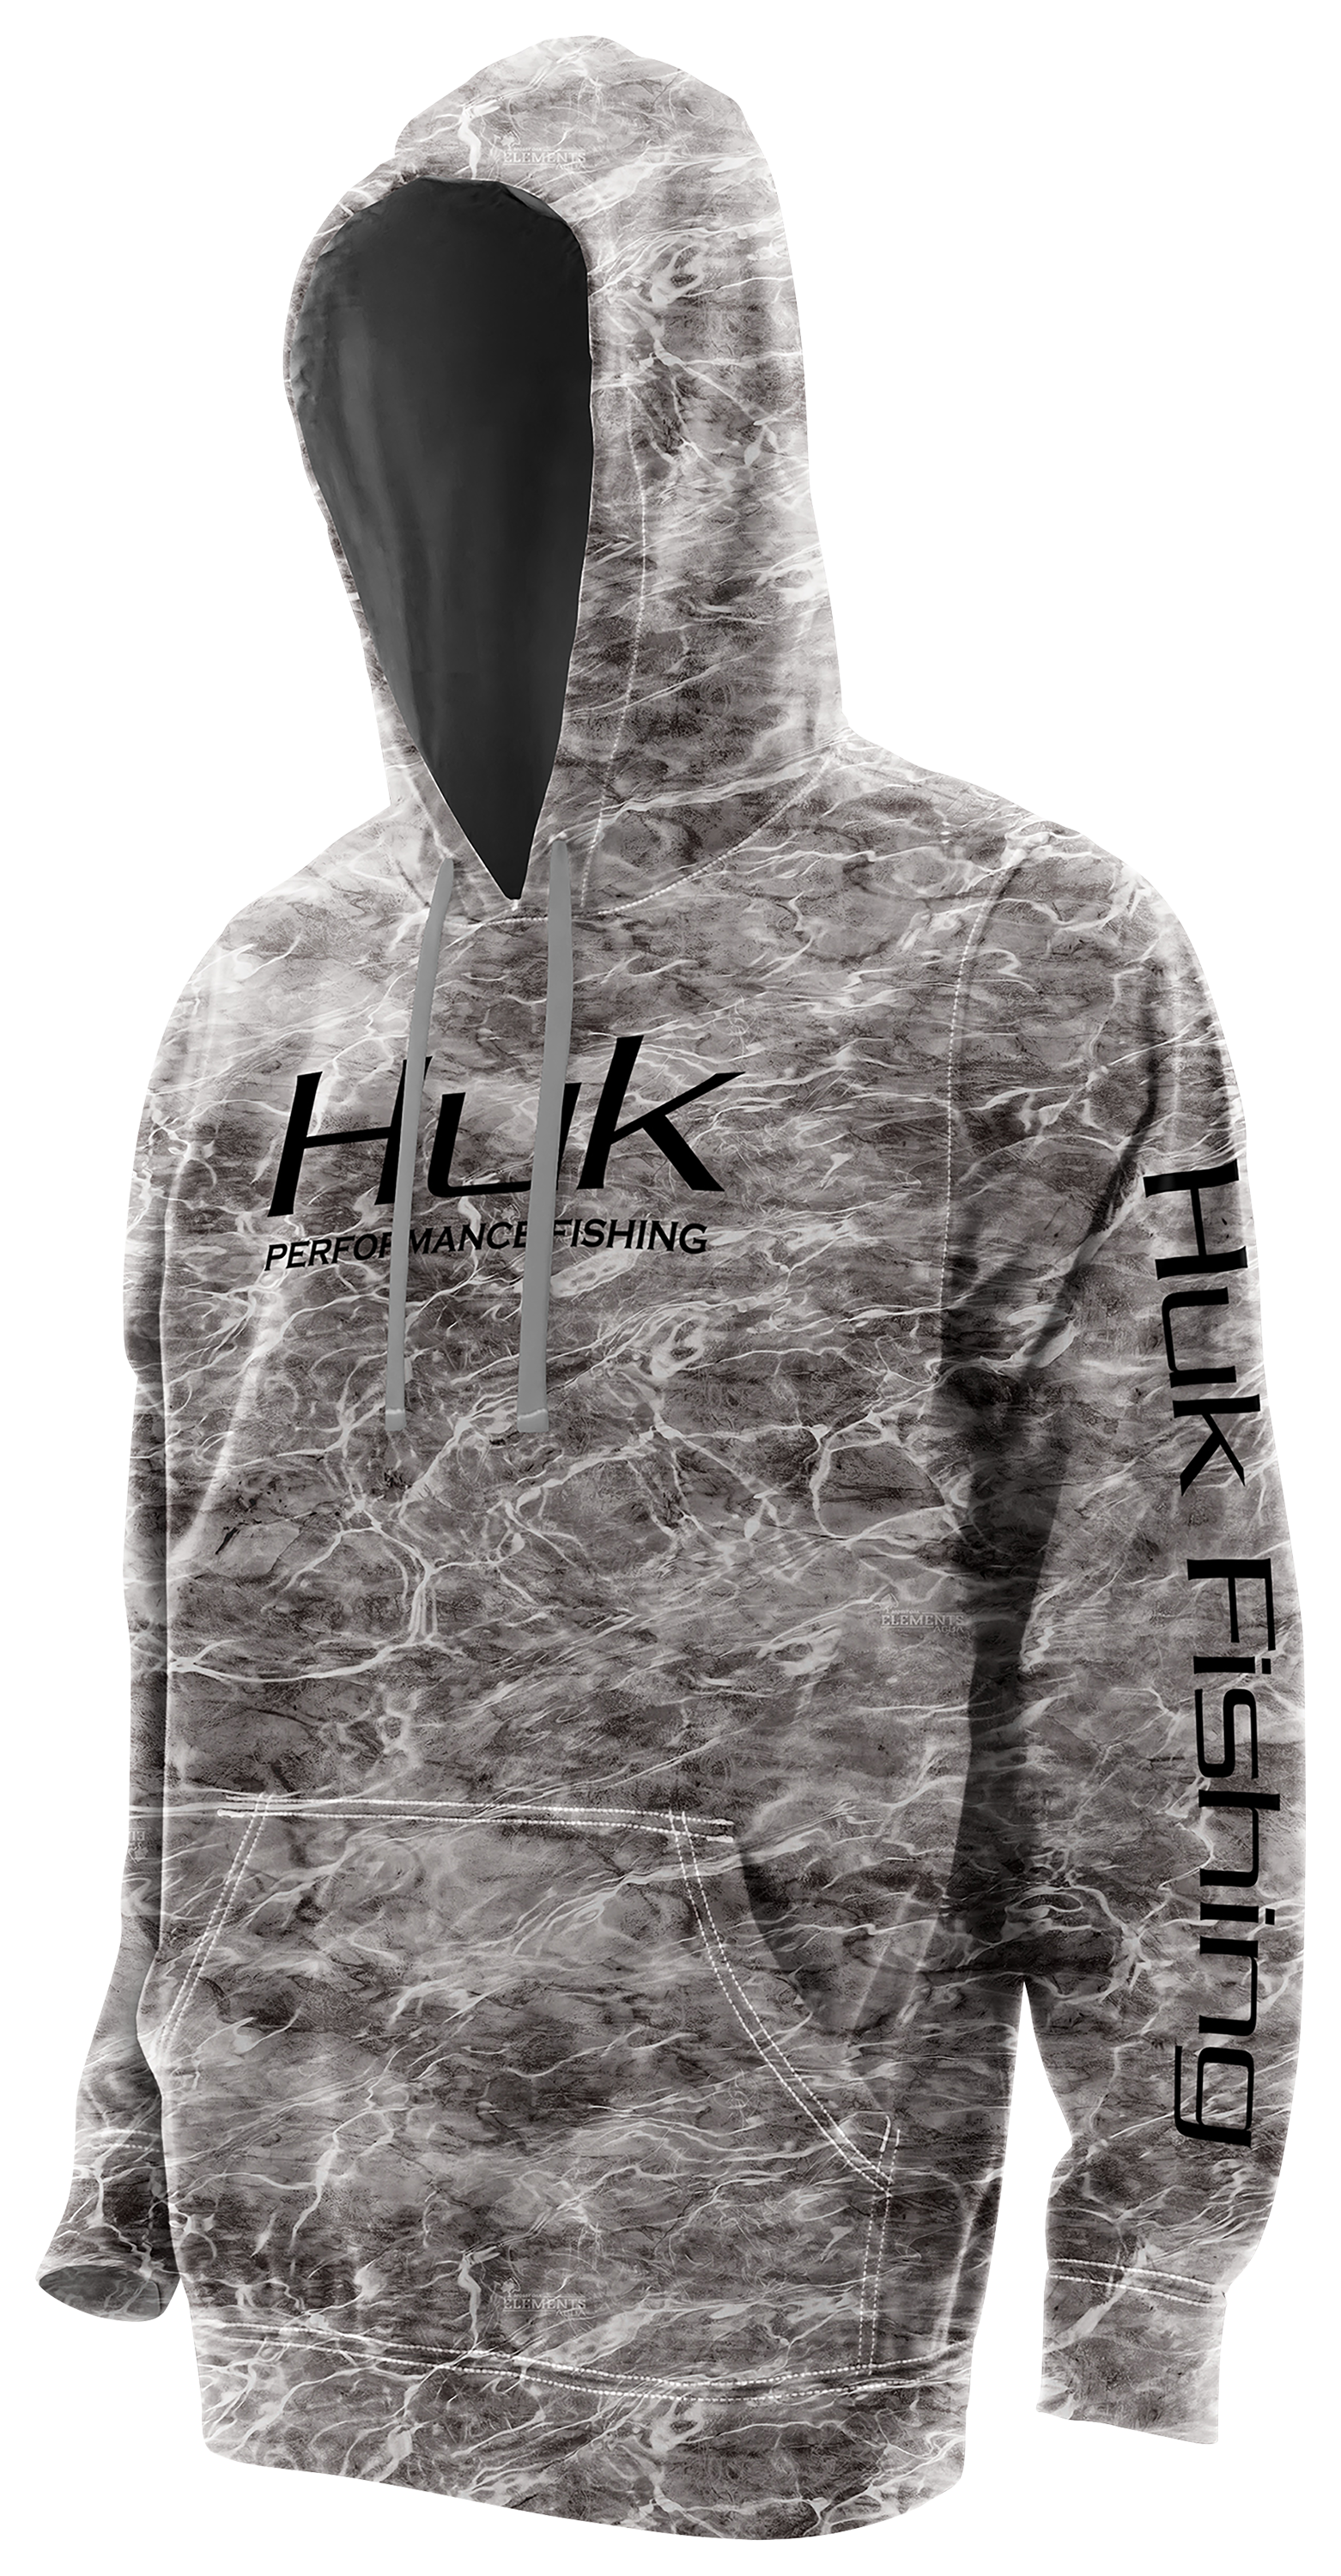 Huk Fishing Men's Fleece Hull Hoodie, Iron Heather, XXL - H1300032-014-XXL